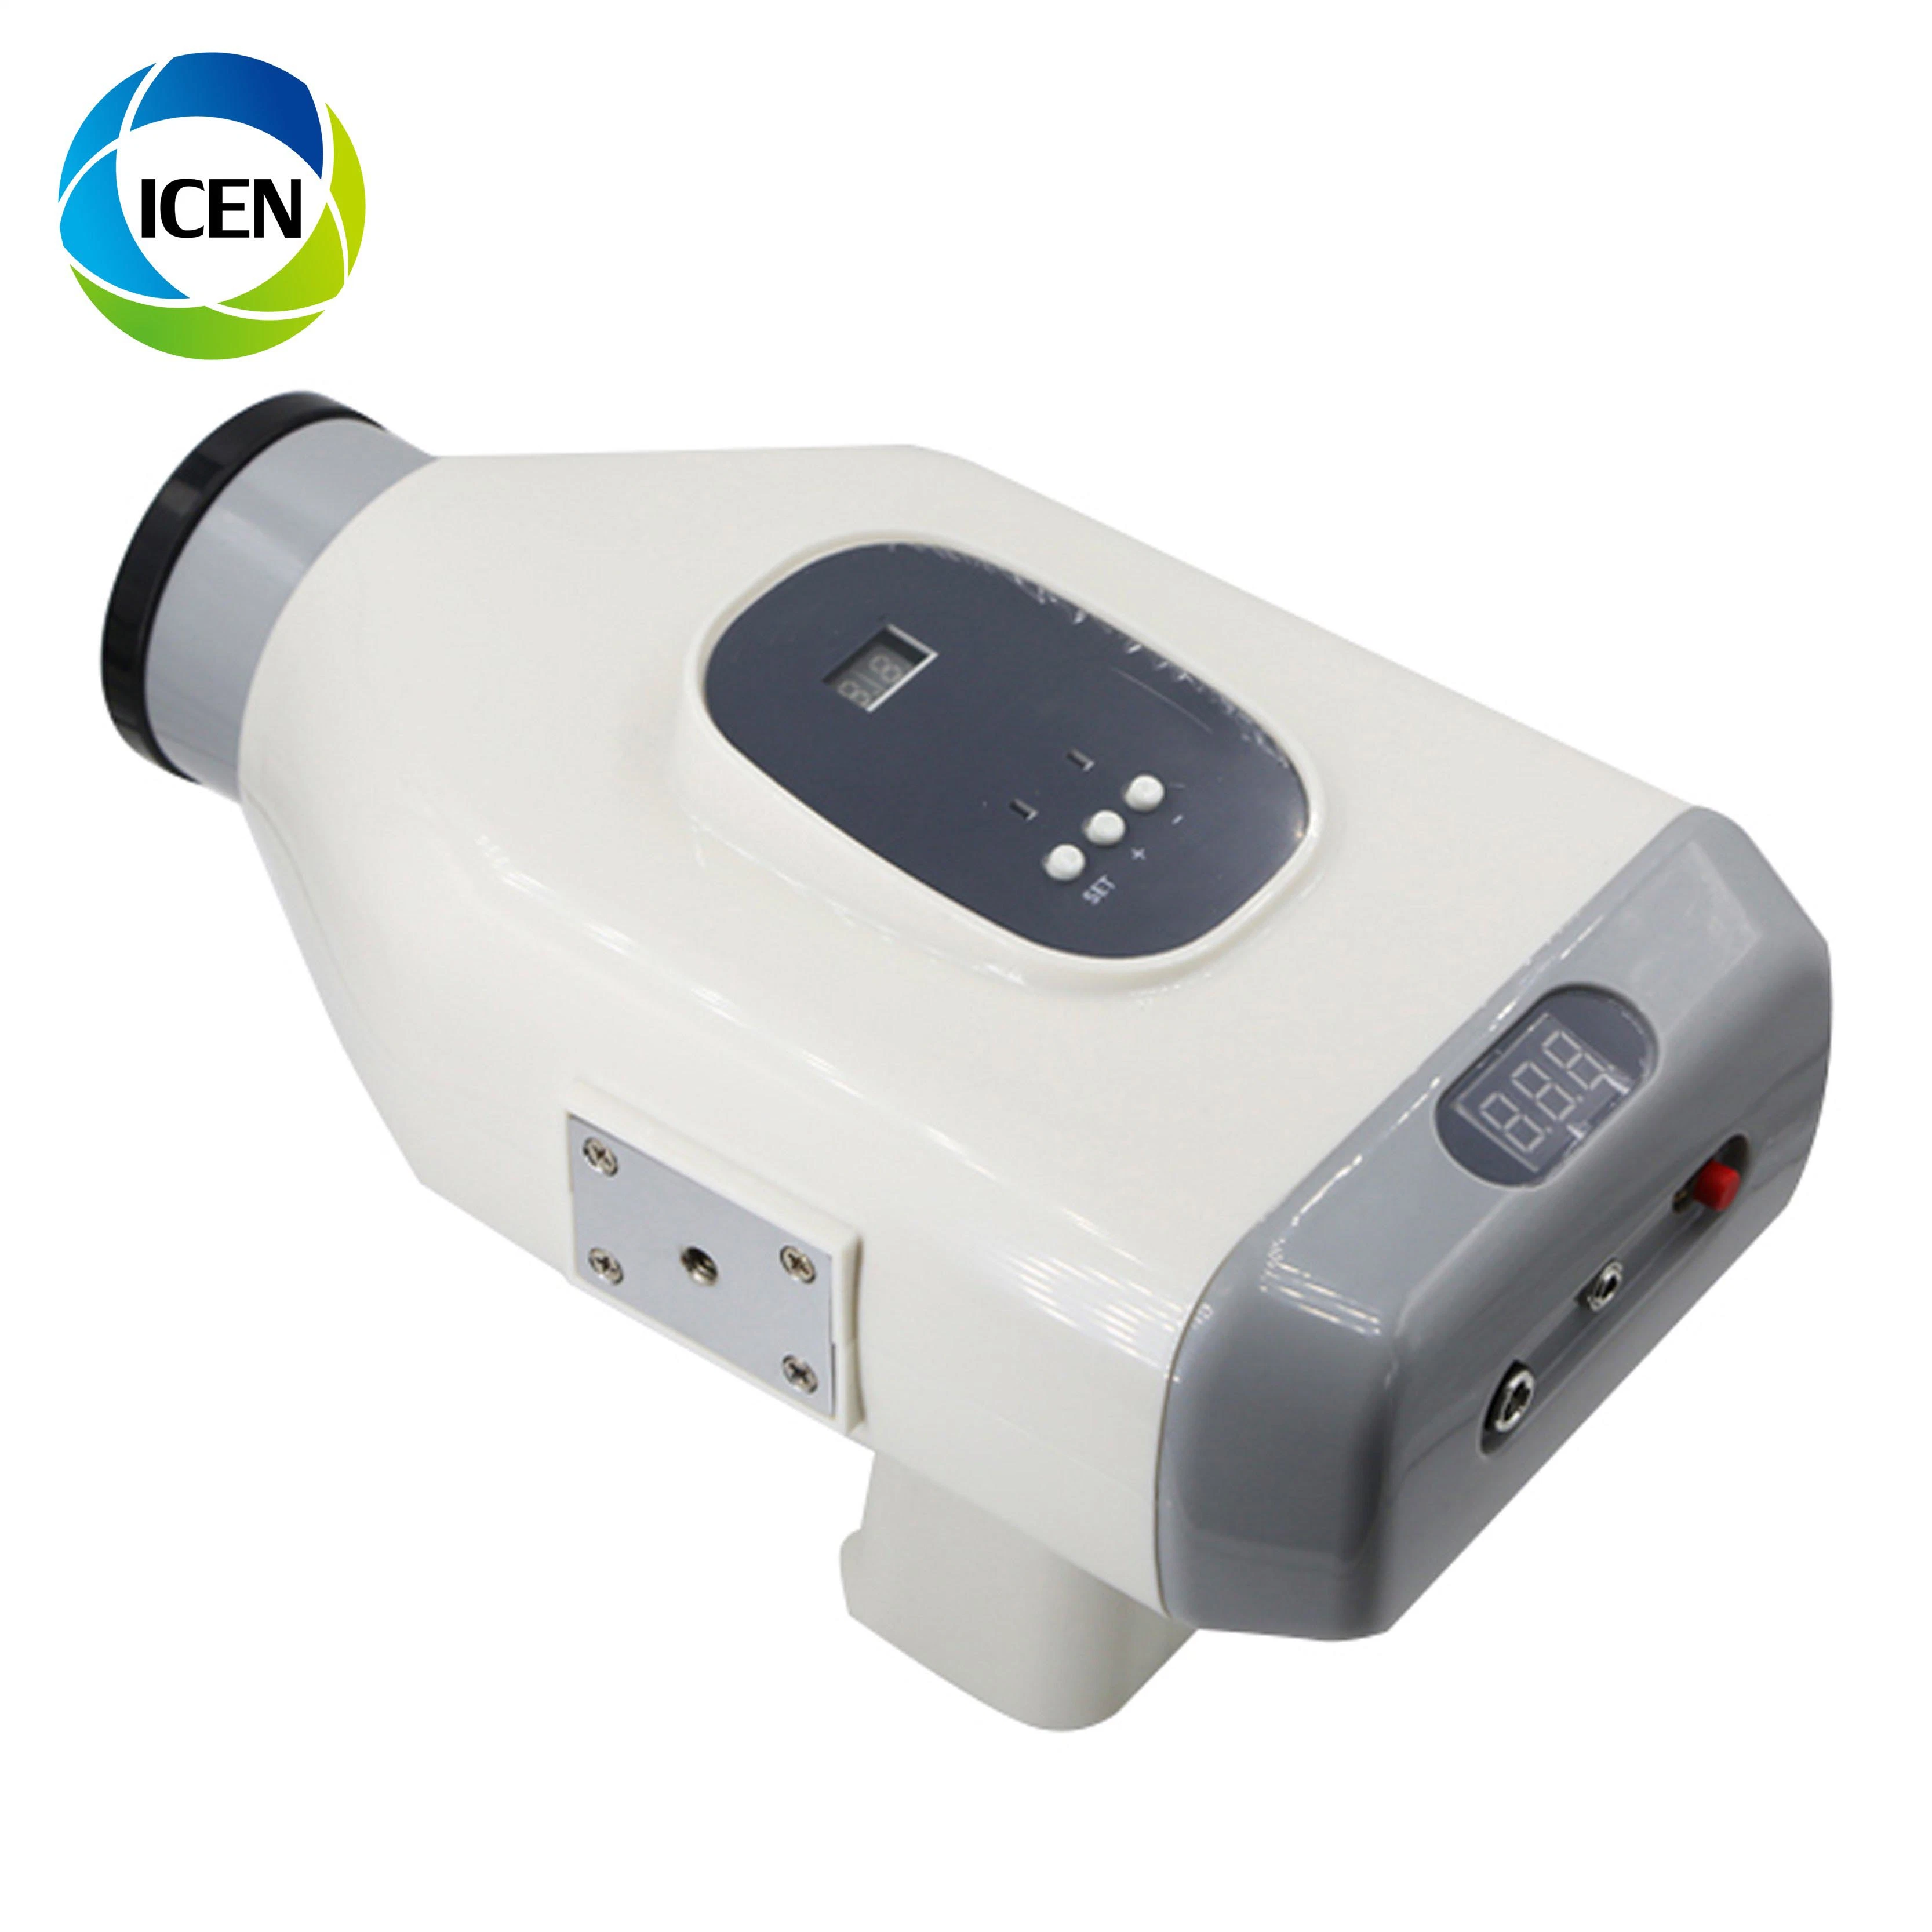 Em BLX odontológico Portátil Digital Imaging máquina/sem fio dental unidade de raios X